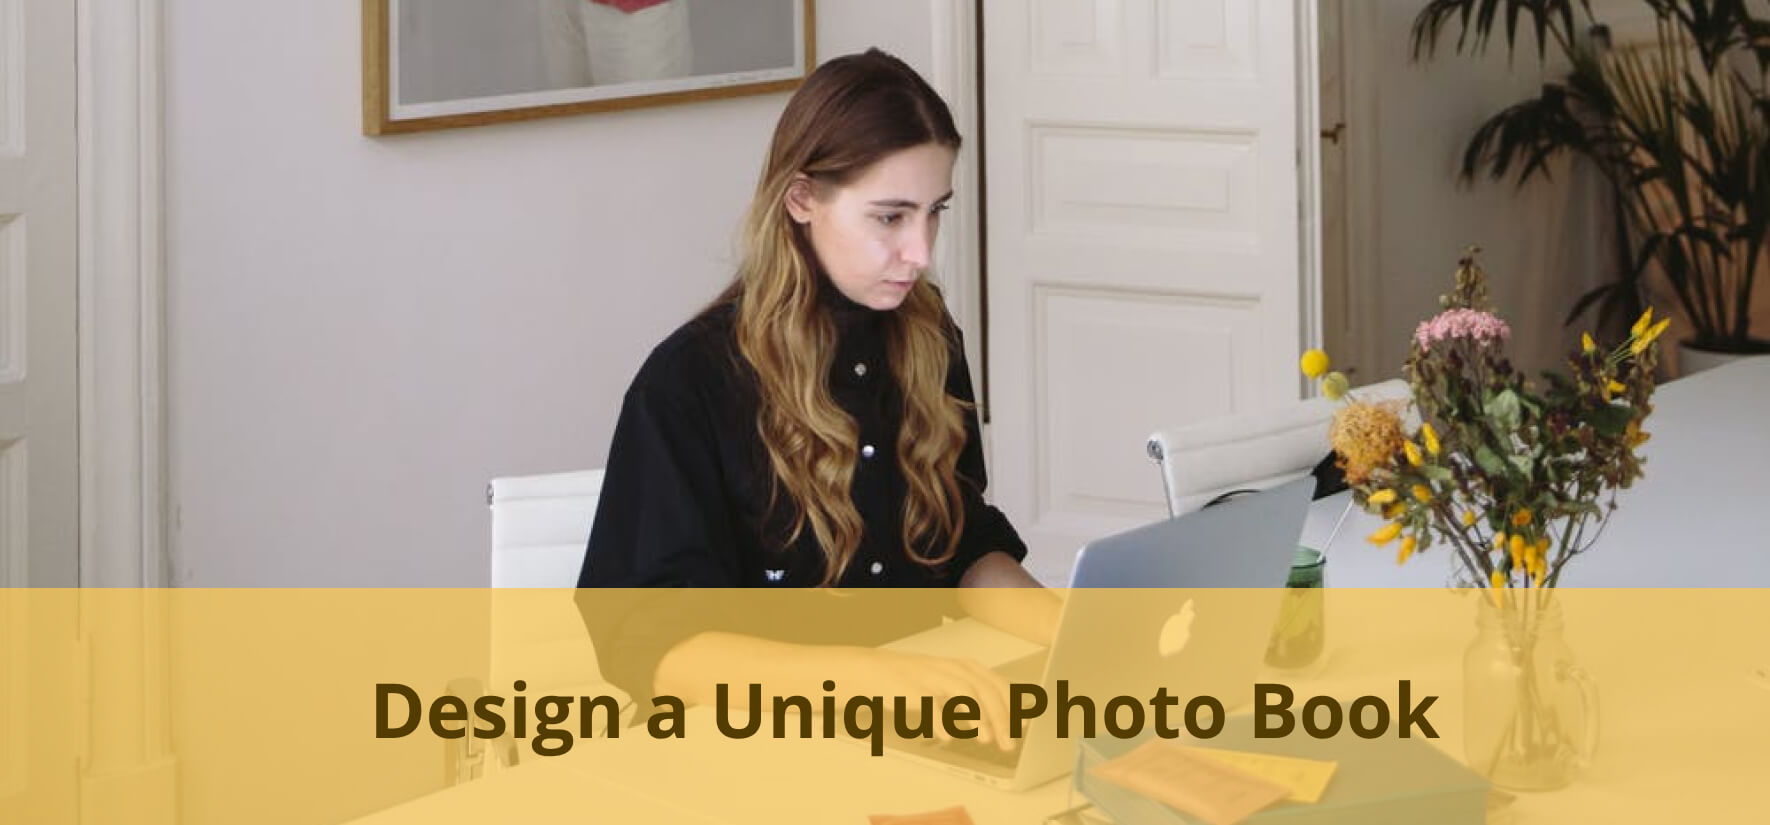 Design a Unique Photo Book